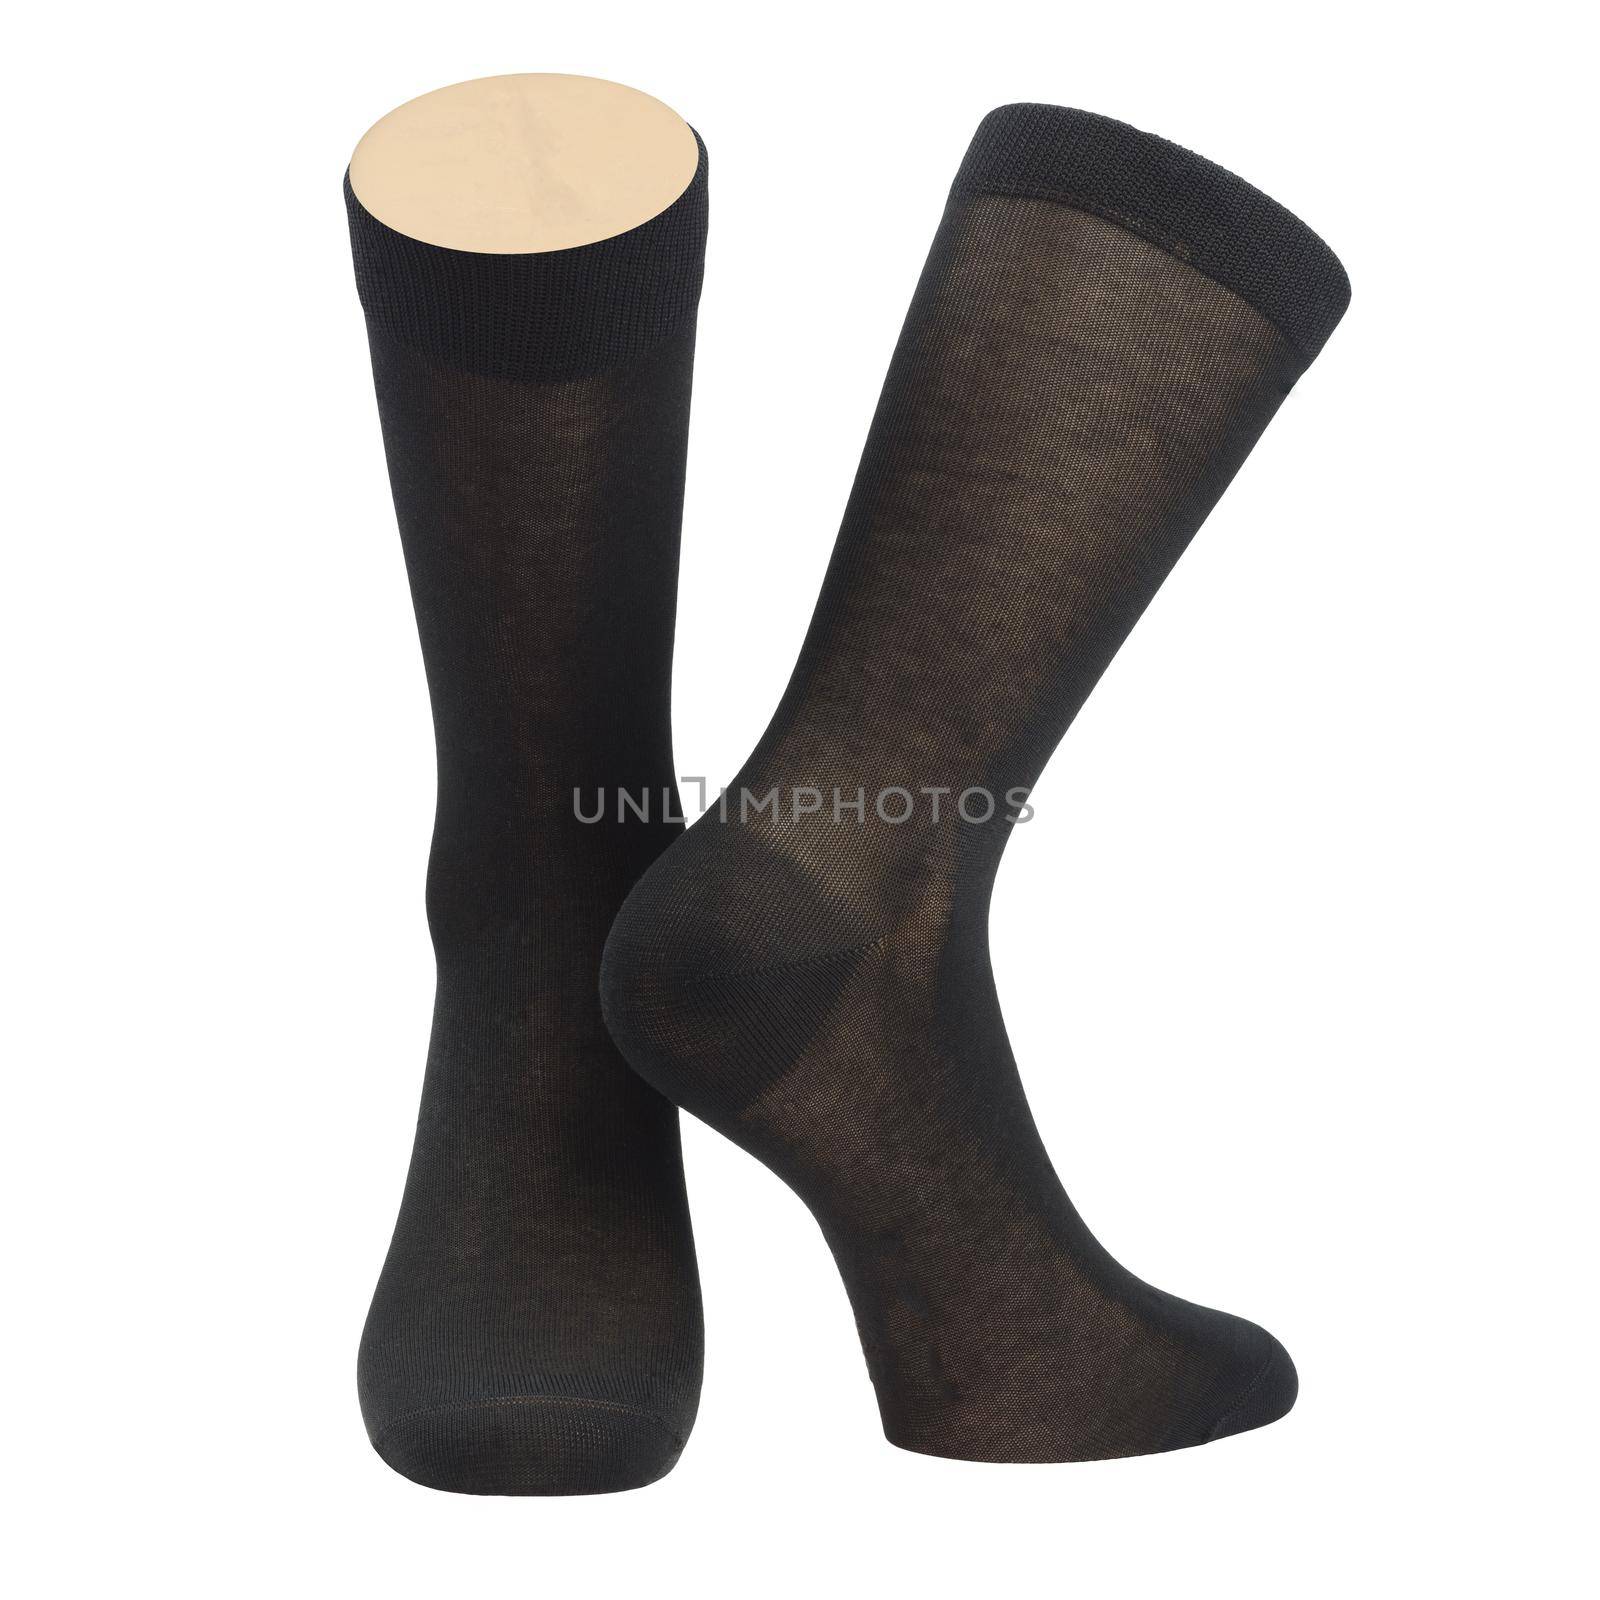 Socks on mannequin legs isolated on white